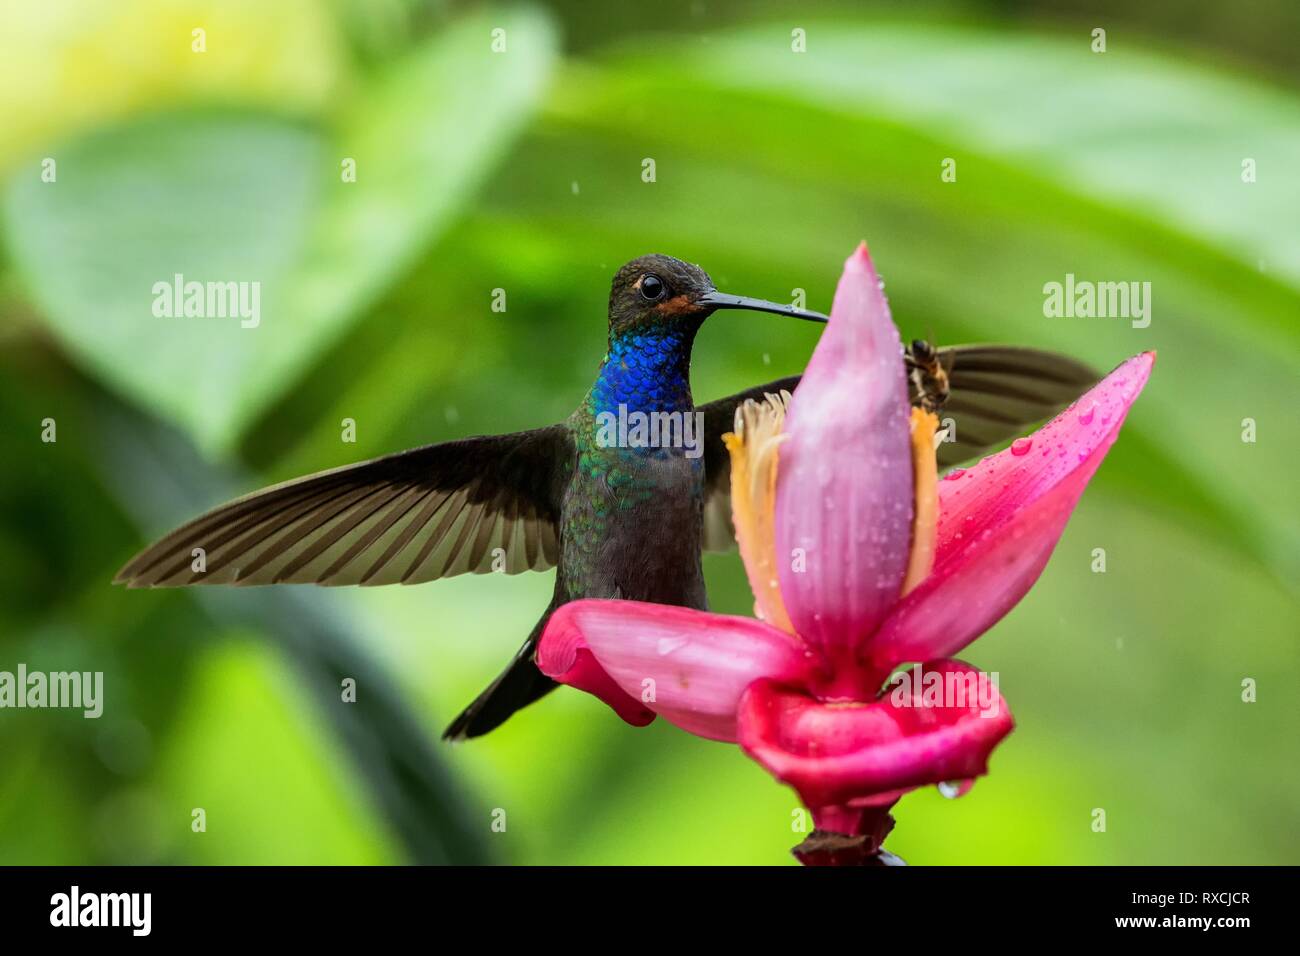 Hummingbird planant à côté de fleur rose et jaune, jardin, forêt tropicale, de la Colombie, de l'oiseau en vol avec les ailes étendues,battant sucki hummingbird Banque D'Images